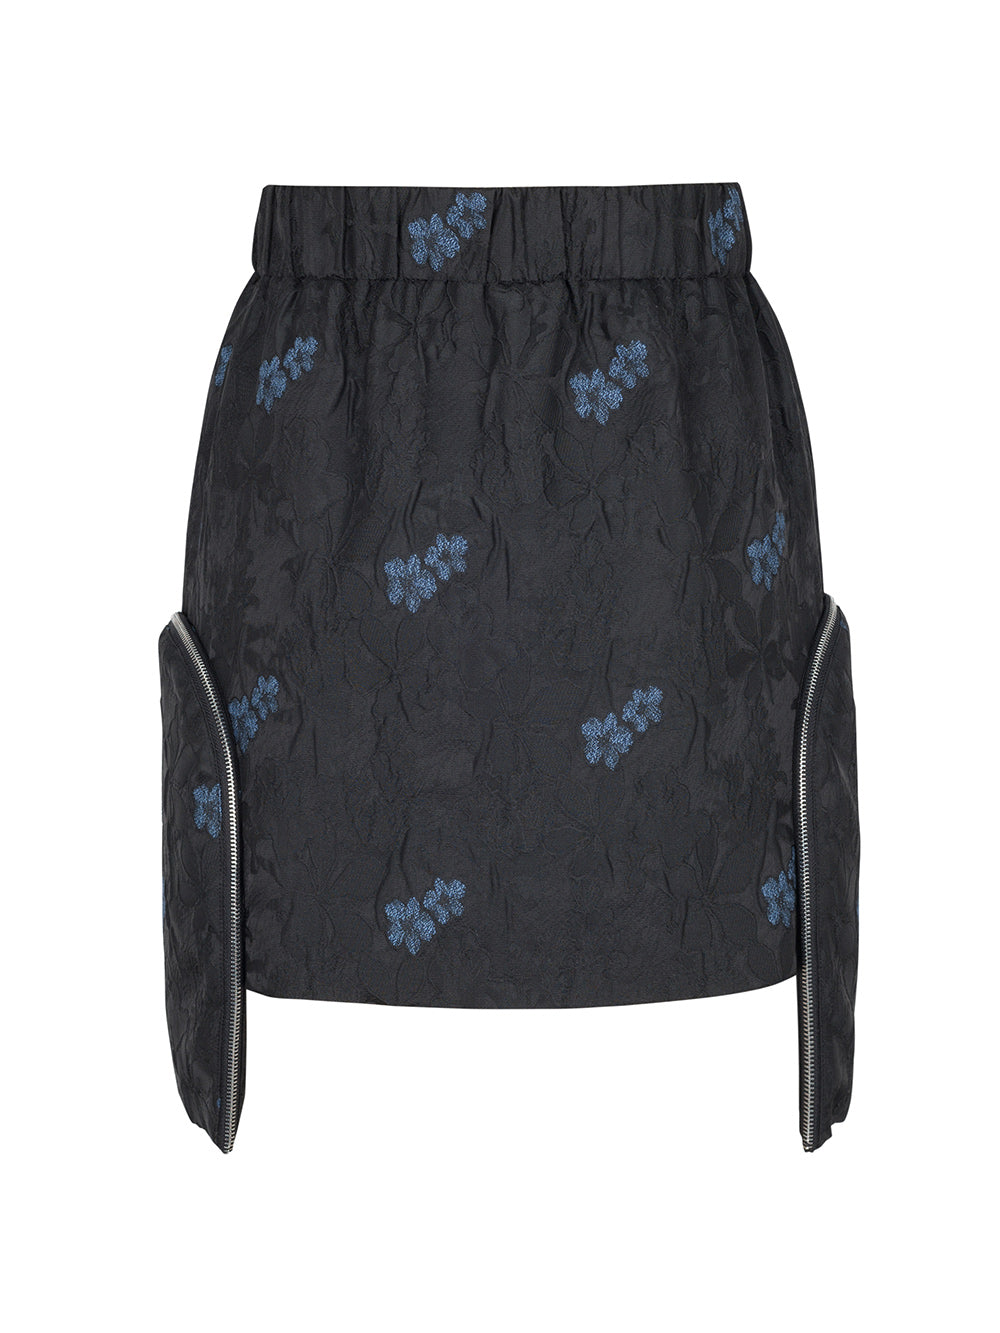 MUKZIN Jacquard Short Skirt